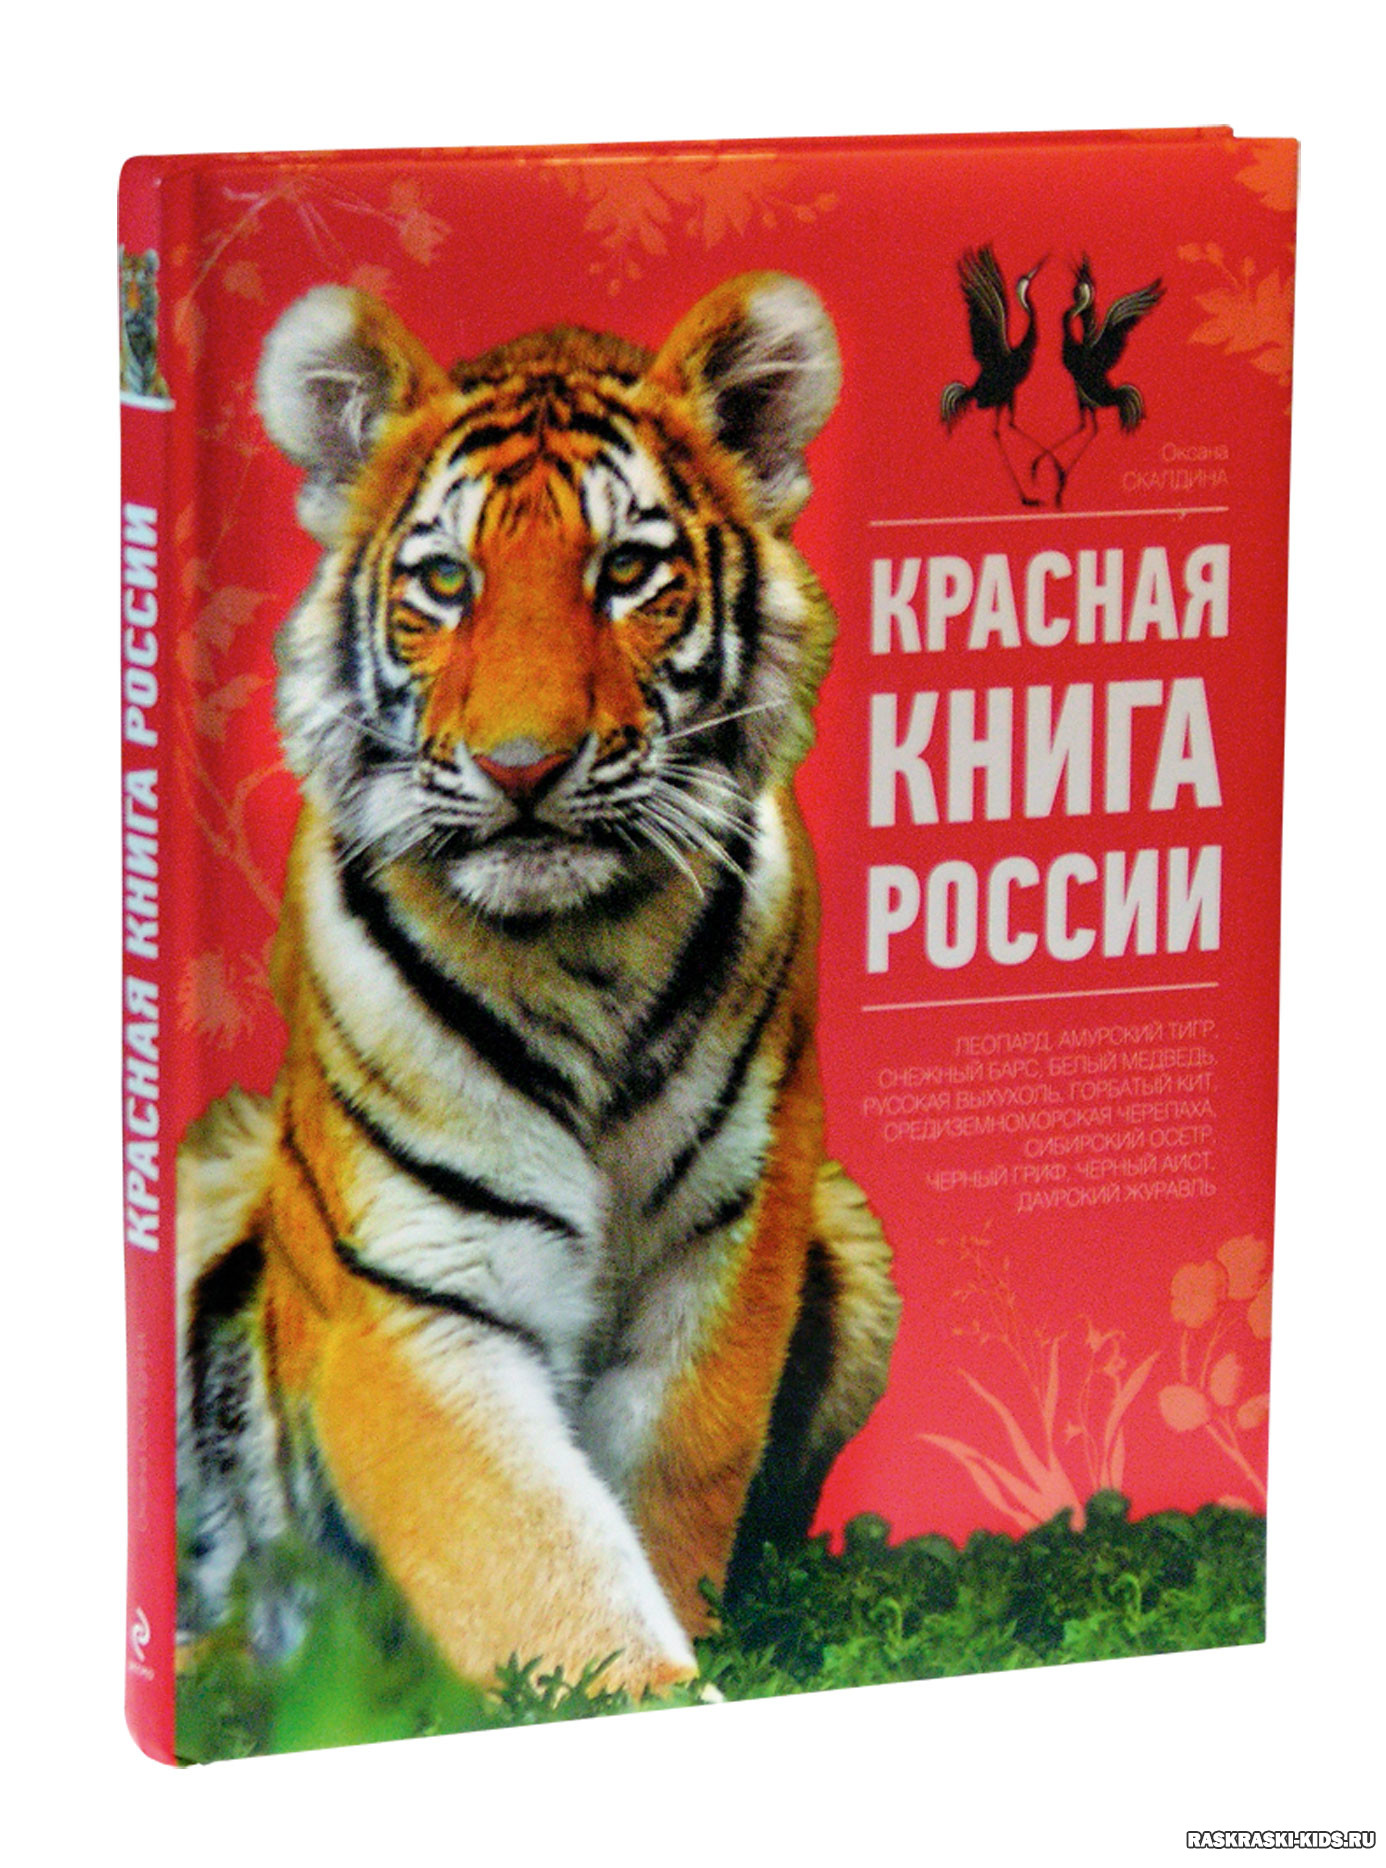 Т красная книга. Красная книга. Красная книга России. Красная книга обложка. Красная книга для детей.